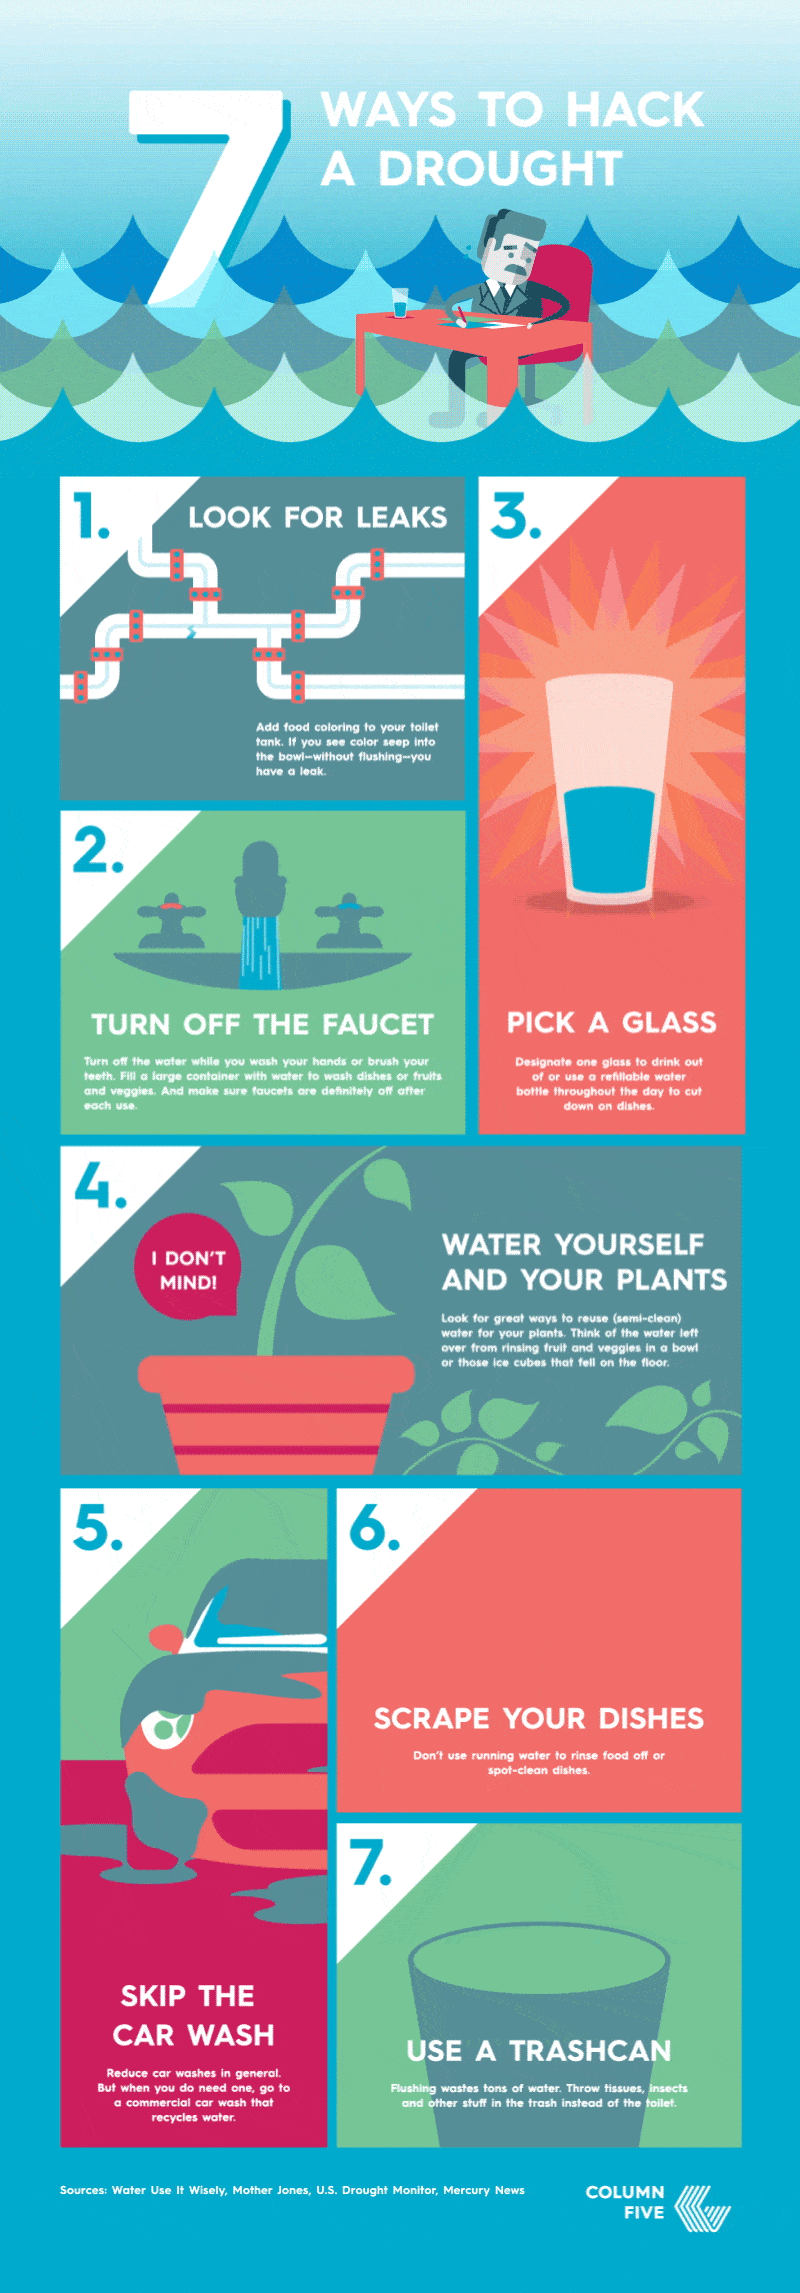 Columna cinco brinda consejos para cuidar el medio ambiente y combatir las sequías.